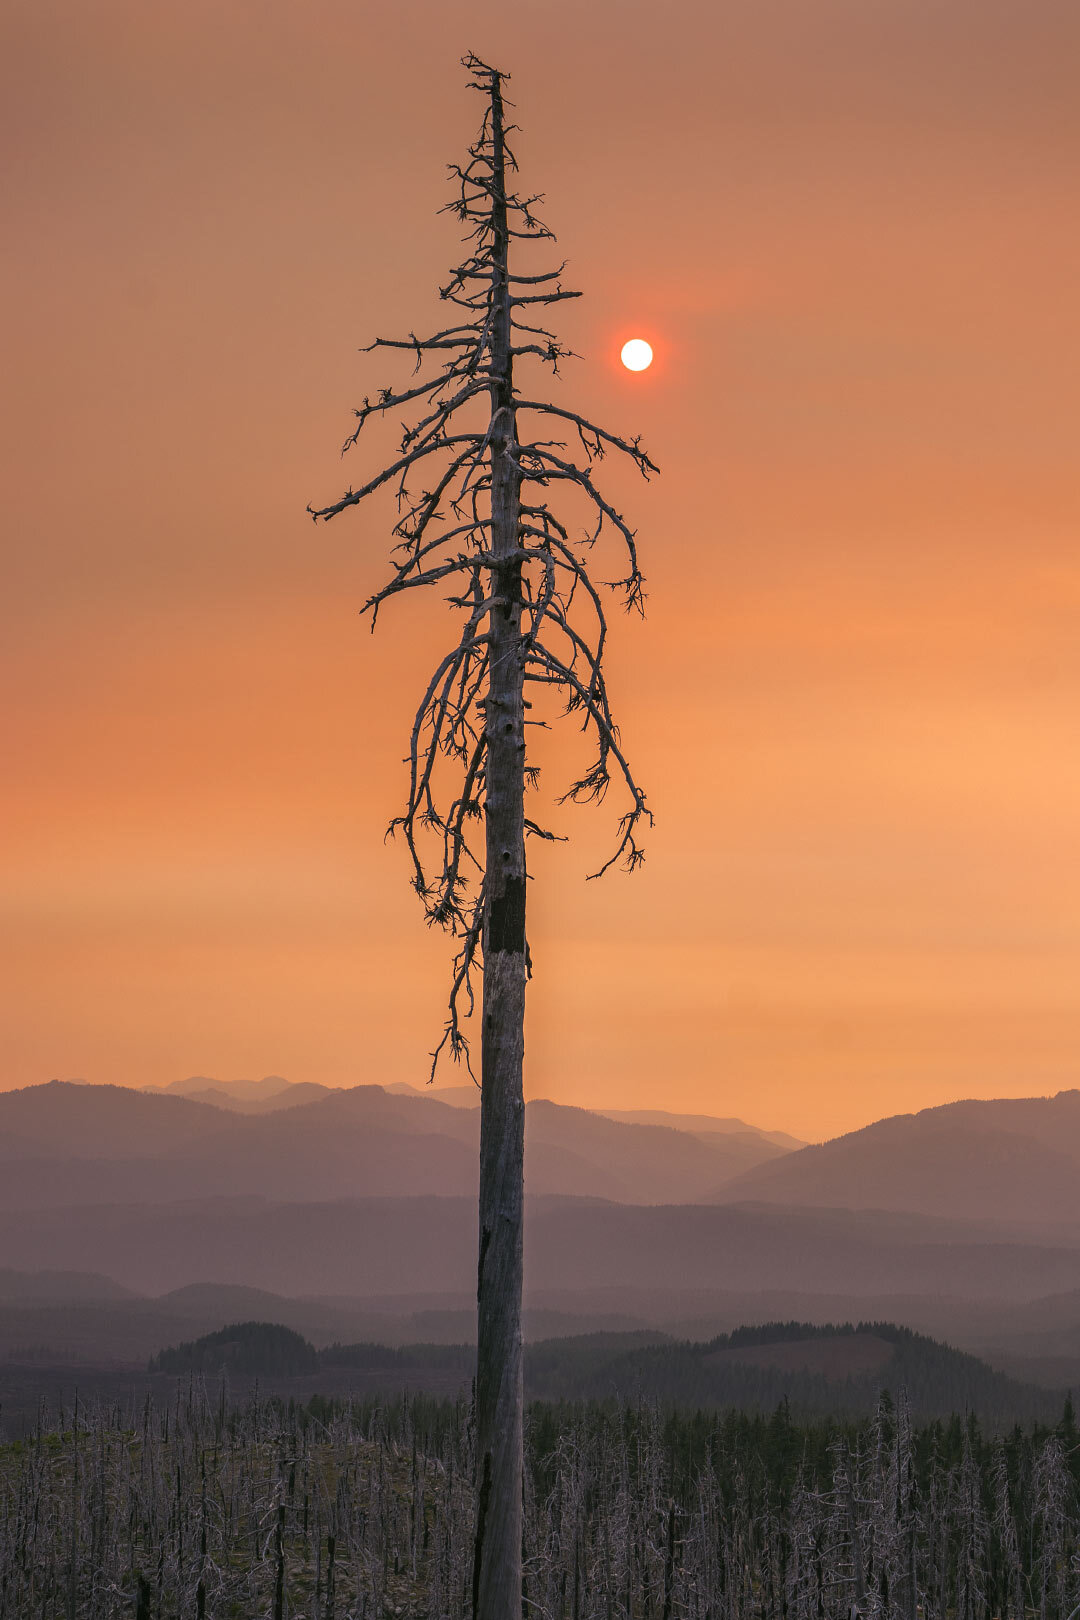 Dead tree under a smoky sky